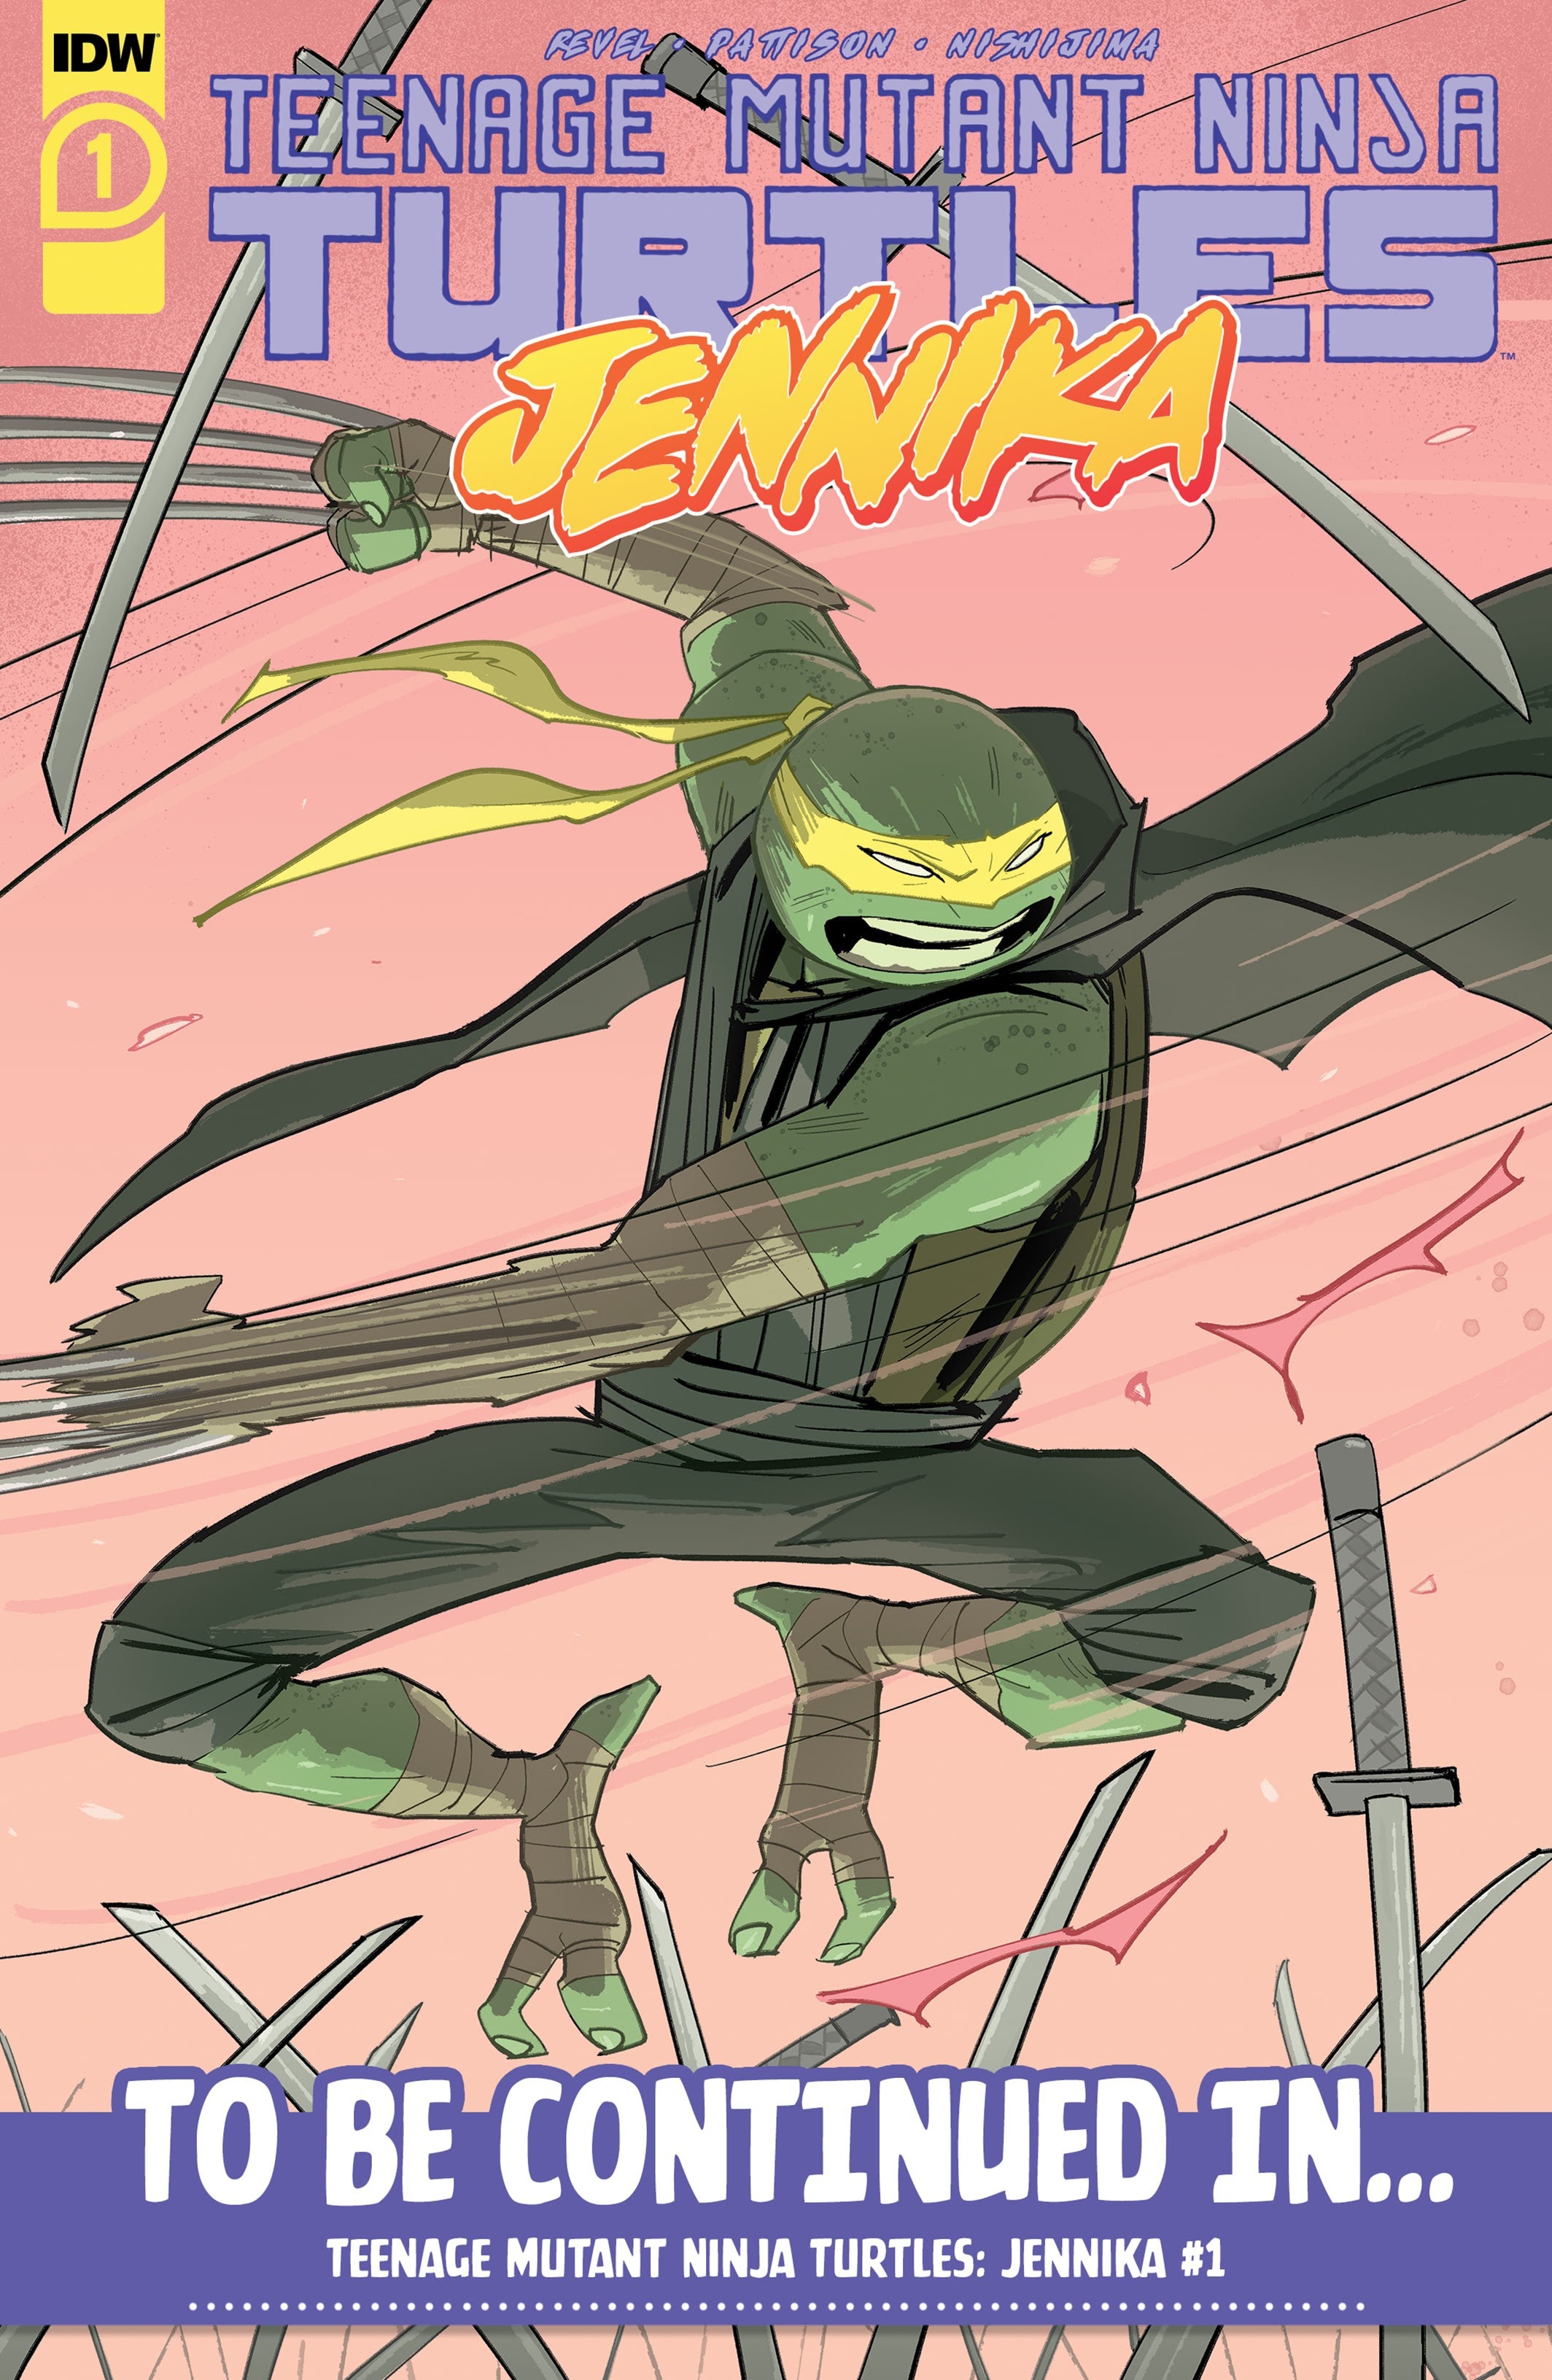 Read online Teenage Mutant Ninja Turtles: The Last Ronin comic -  Issue #3 - 53